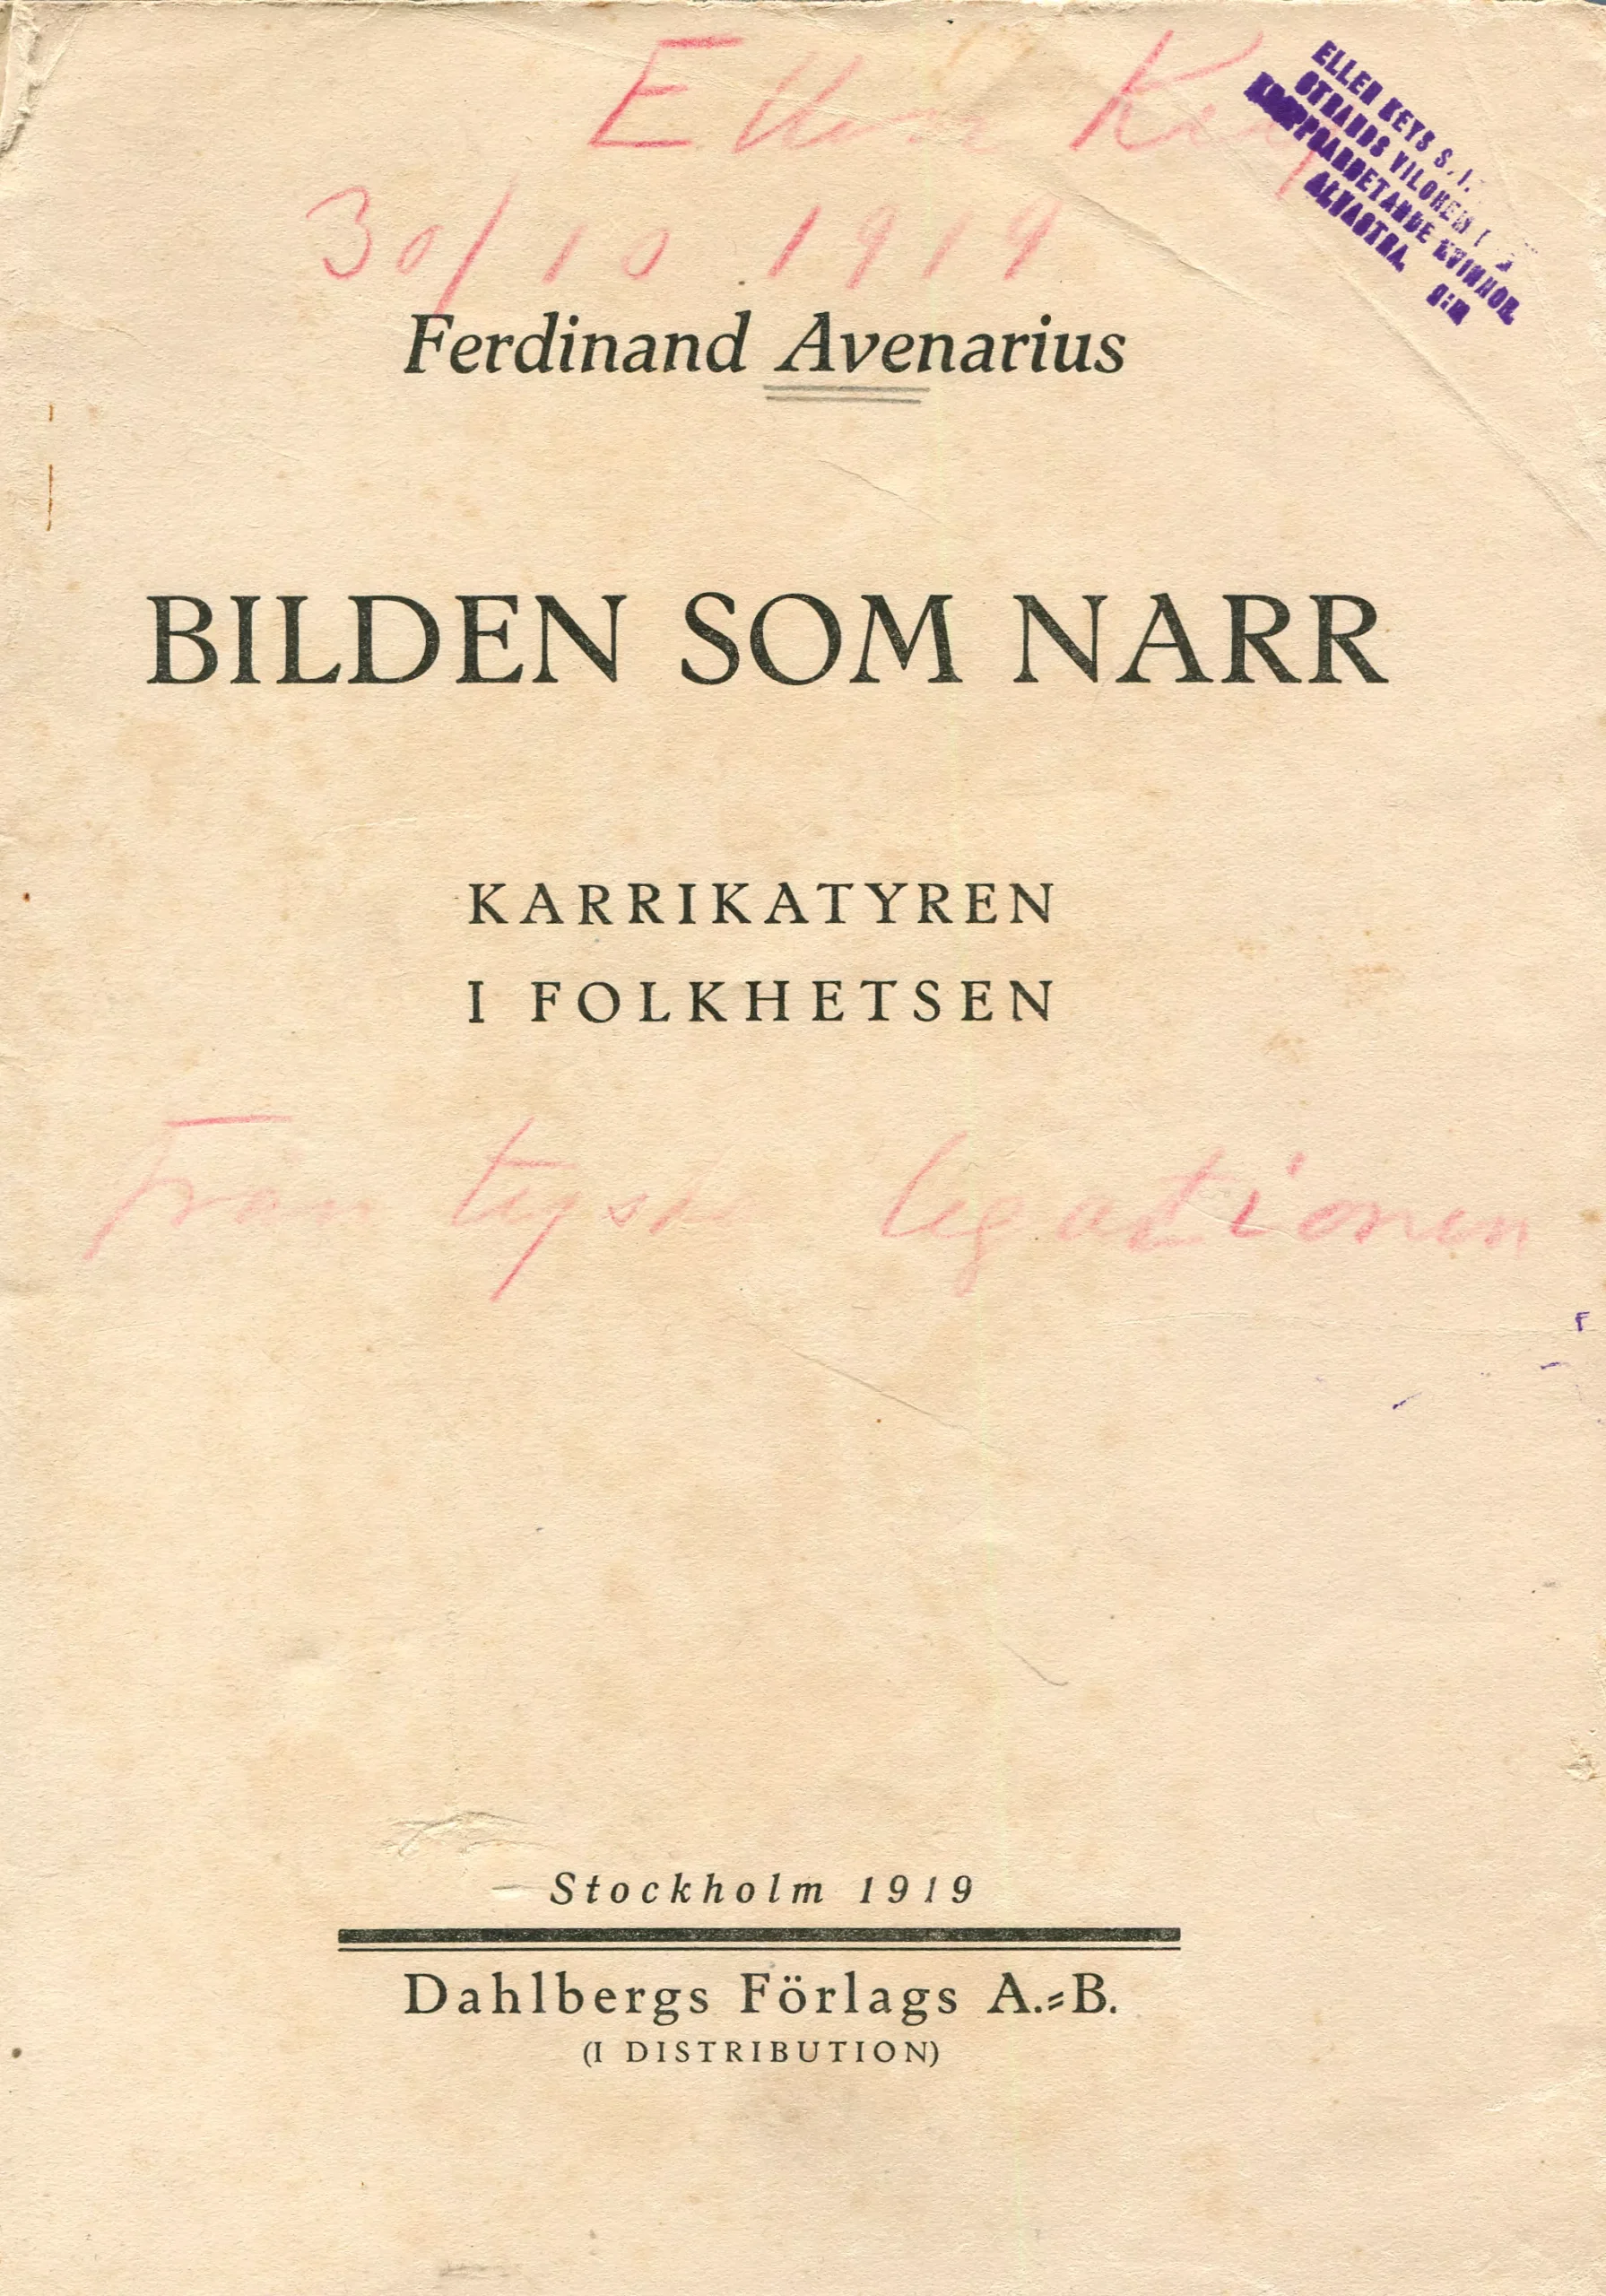 Bilden som narr , Stockholm 1919